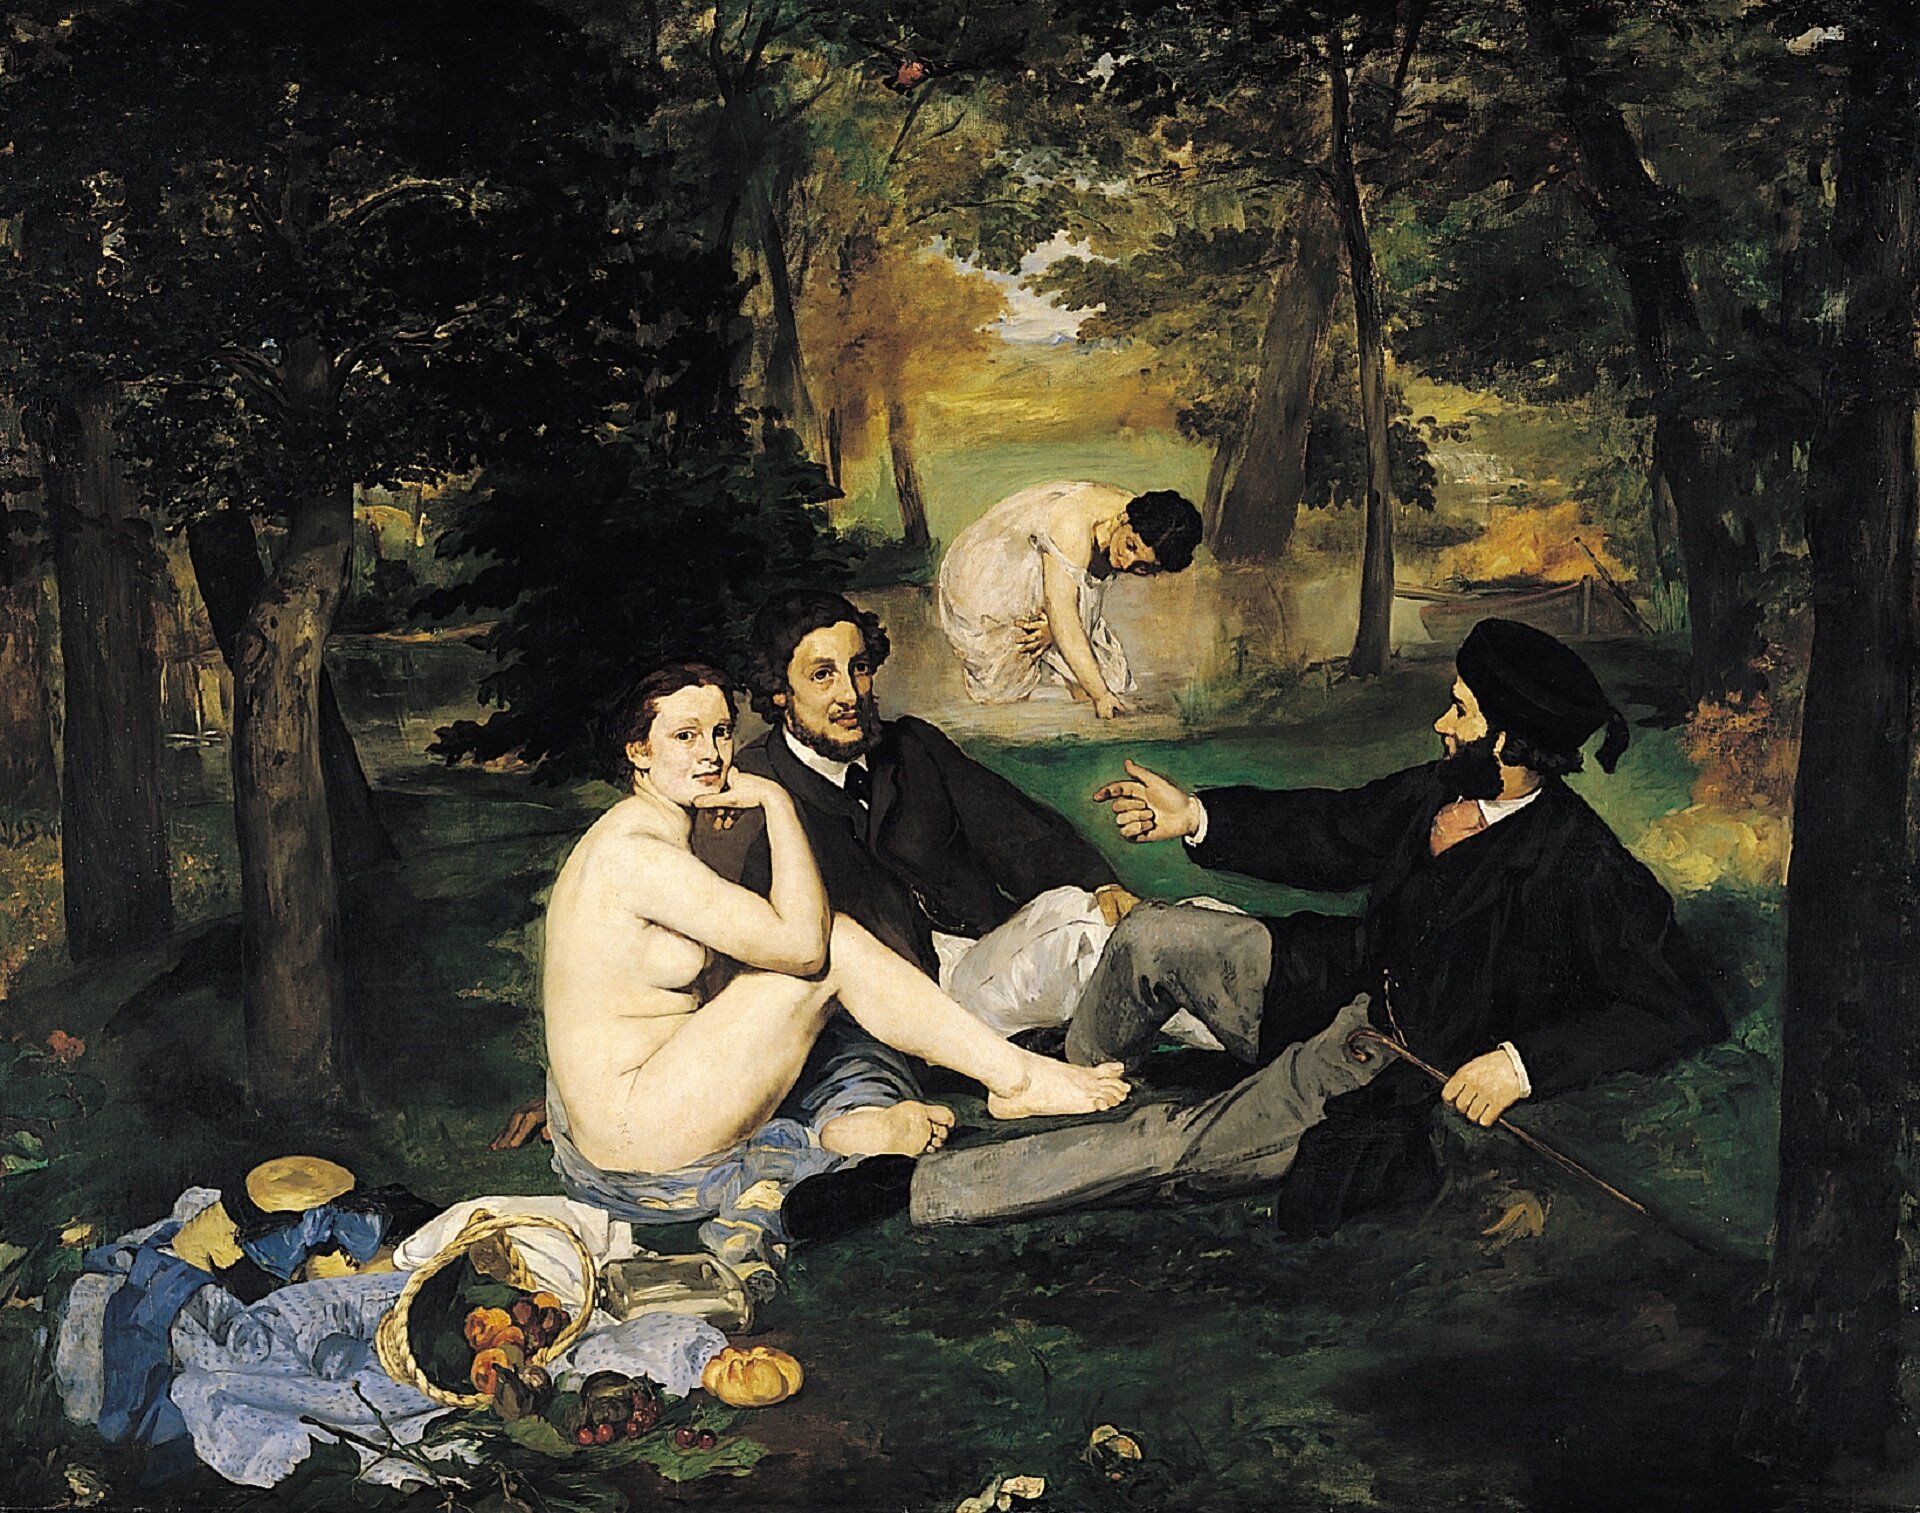 Ilustracja przedstawia obraz „Śniadanie na trawie”, autorstwa  Édouarda Maneta. W centrum horyzontalnej kompozycji ukazani zostali dwaj mężczyźni oraz naga kobieta, siedzący na leśnej polanie. Elegancko ubrani mężczyźni w czarnych frakach i jasnych spodniach, zajęci są rozmową. Zupełnie nie zwracają uwagi na siedzącą obok nich kobietę. Ona również nie jest nimi zainteresowana. Z lekkim uśmiechem spogląda w stronę odbiorcy dzieła. Prawą rękę opiera na kolanie, podpierając dłonią brodę. Mężczyzna siedzący z prawej strony ma na głowie czapkę. W prawej ręce trzyma laskę. Lewą dłoń ma skierowaną w kierunku mężczyzny, siedzącego obok. Po prawej stronie kobiety znajduje się kosz z jedzeniem i rozrzucone ubrania. W oddali widoczna jest zanurzona do kolan w rzece nimfa, ubrana w długą, białą suknię. Ciemnowłosa kobieta schyla się ku tafli wody. Dzieło utrzymane jest w ciemnej, chłodnej gamie barw z dominacją zieleni. Wyraźnym akcentem w kompozycji jest jasna plama nagiego ciała siedzącej kobiety. 